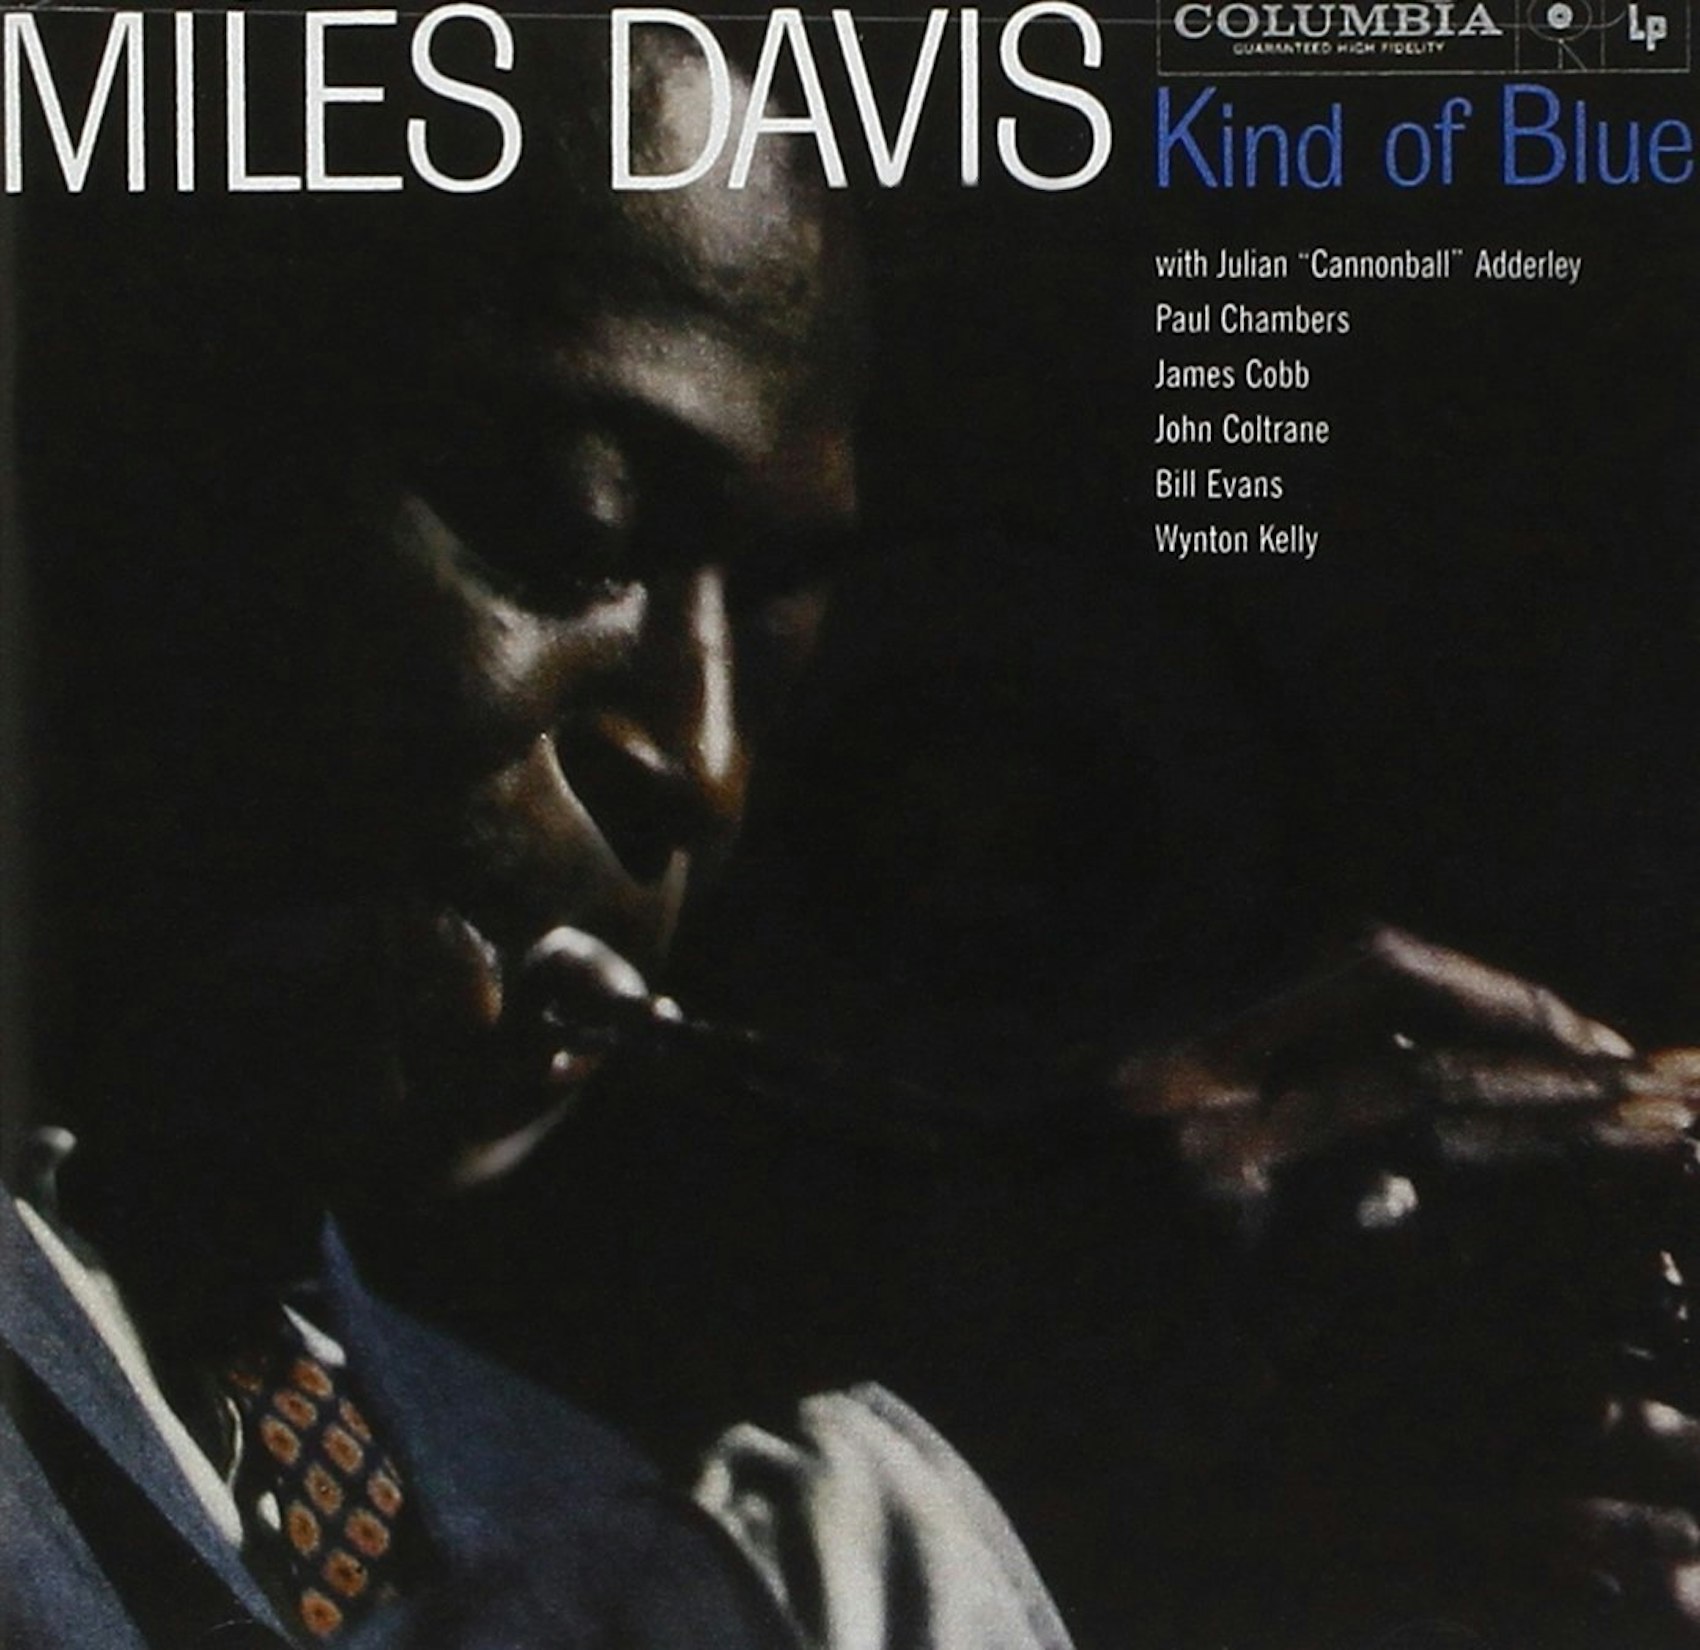 Музыка коламбия. Kind of Blue Майлз Дэвис. Miles Davis - kind of Blue. Miles Davis kind of Blue Vinyl. Miles Davis kind of Blue пластинка Music on Vinyl.